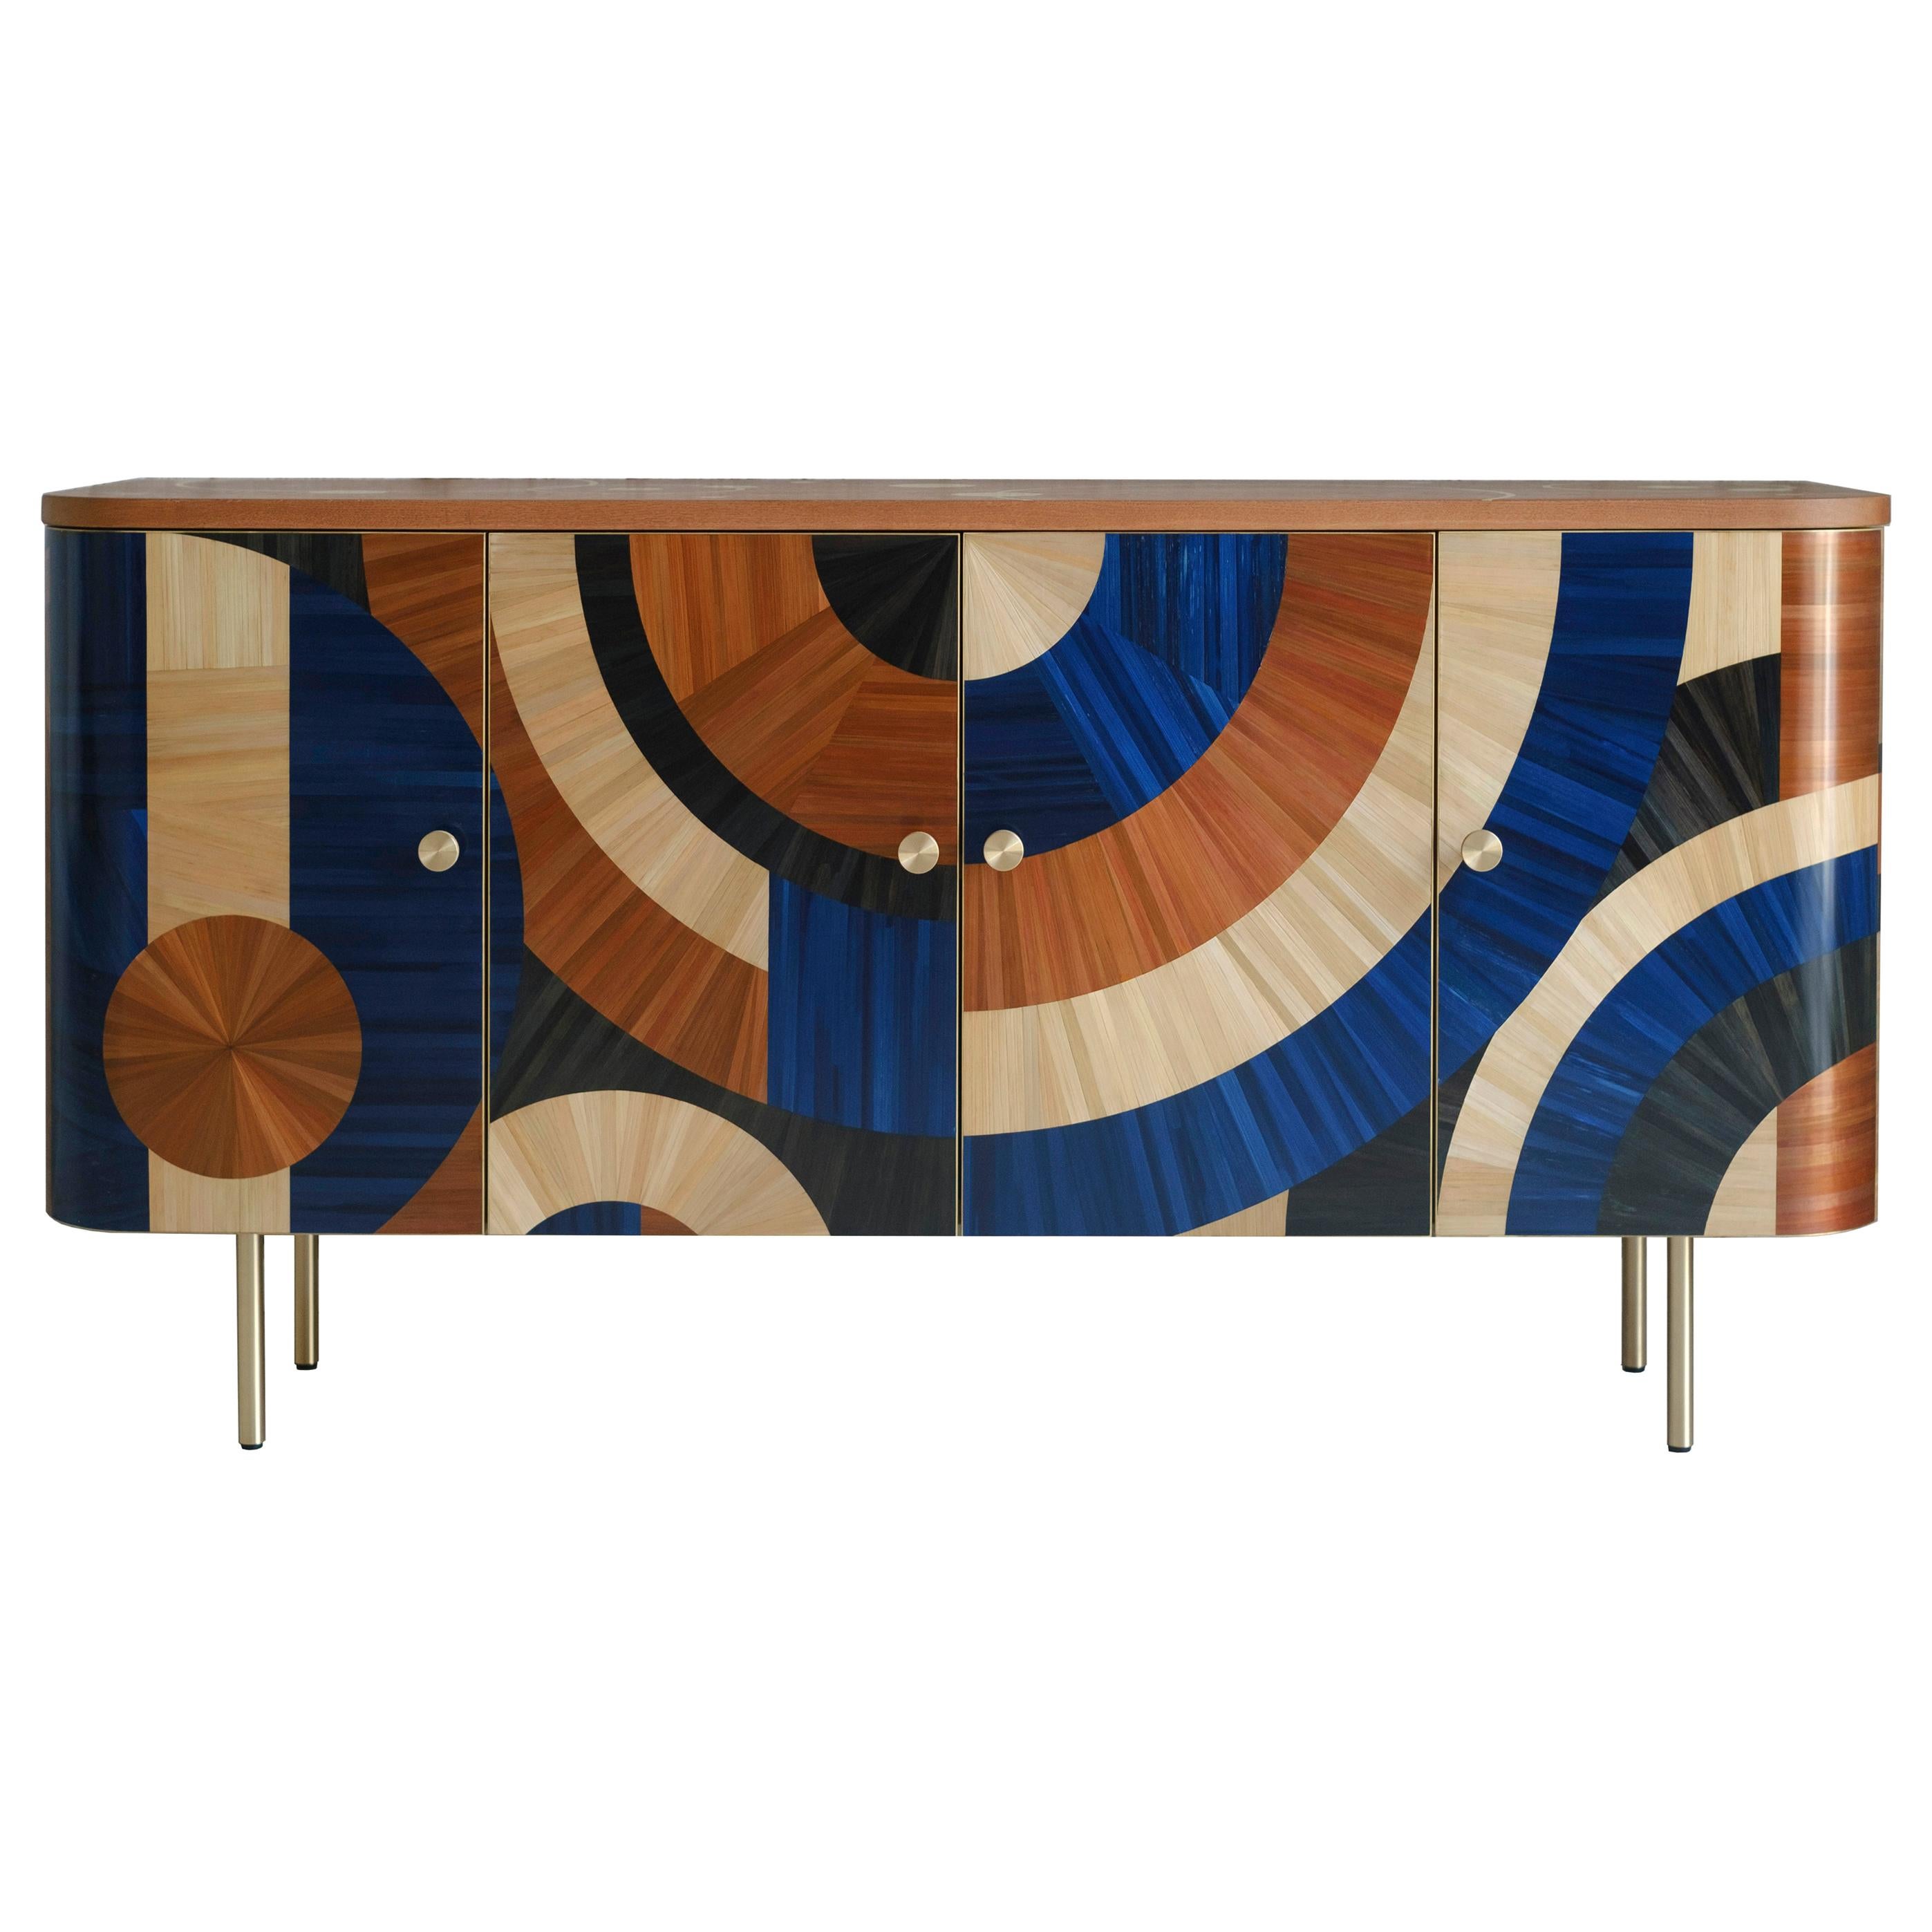 Solomia Stroh Intarsien Art Deco Wood Kabinett Terrakotta Blau Schwarz RUDA Studio